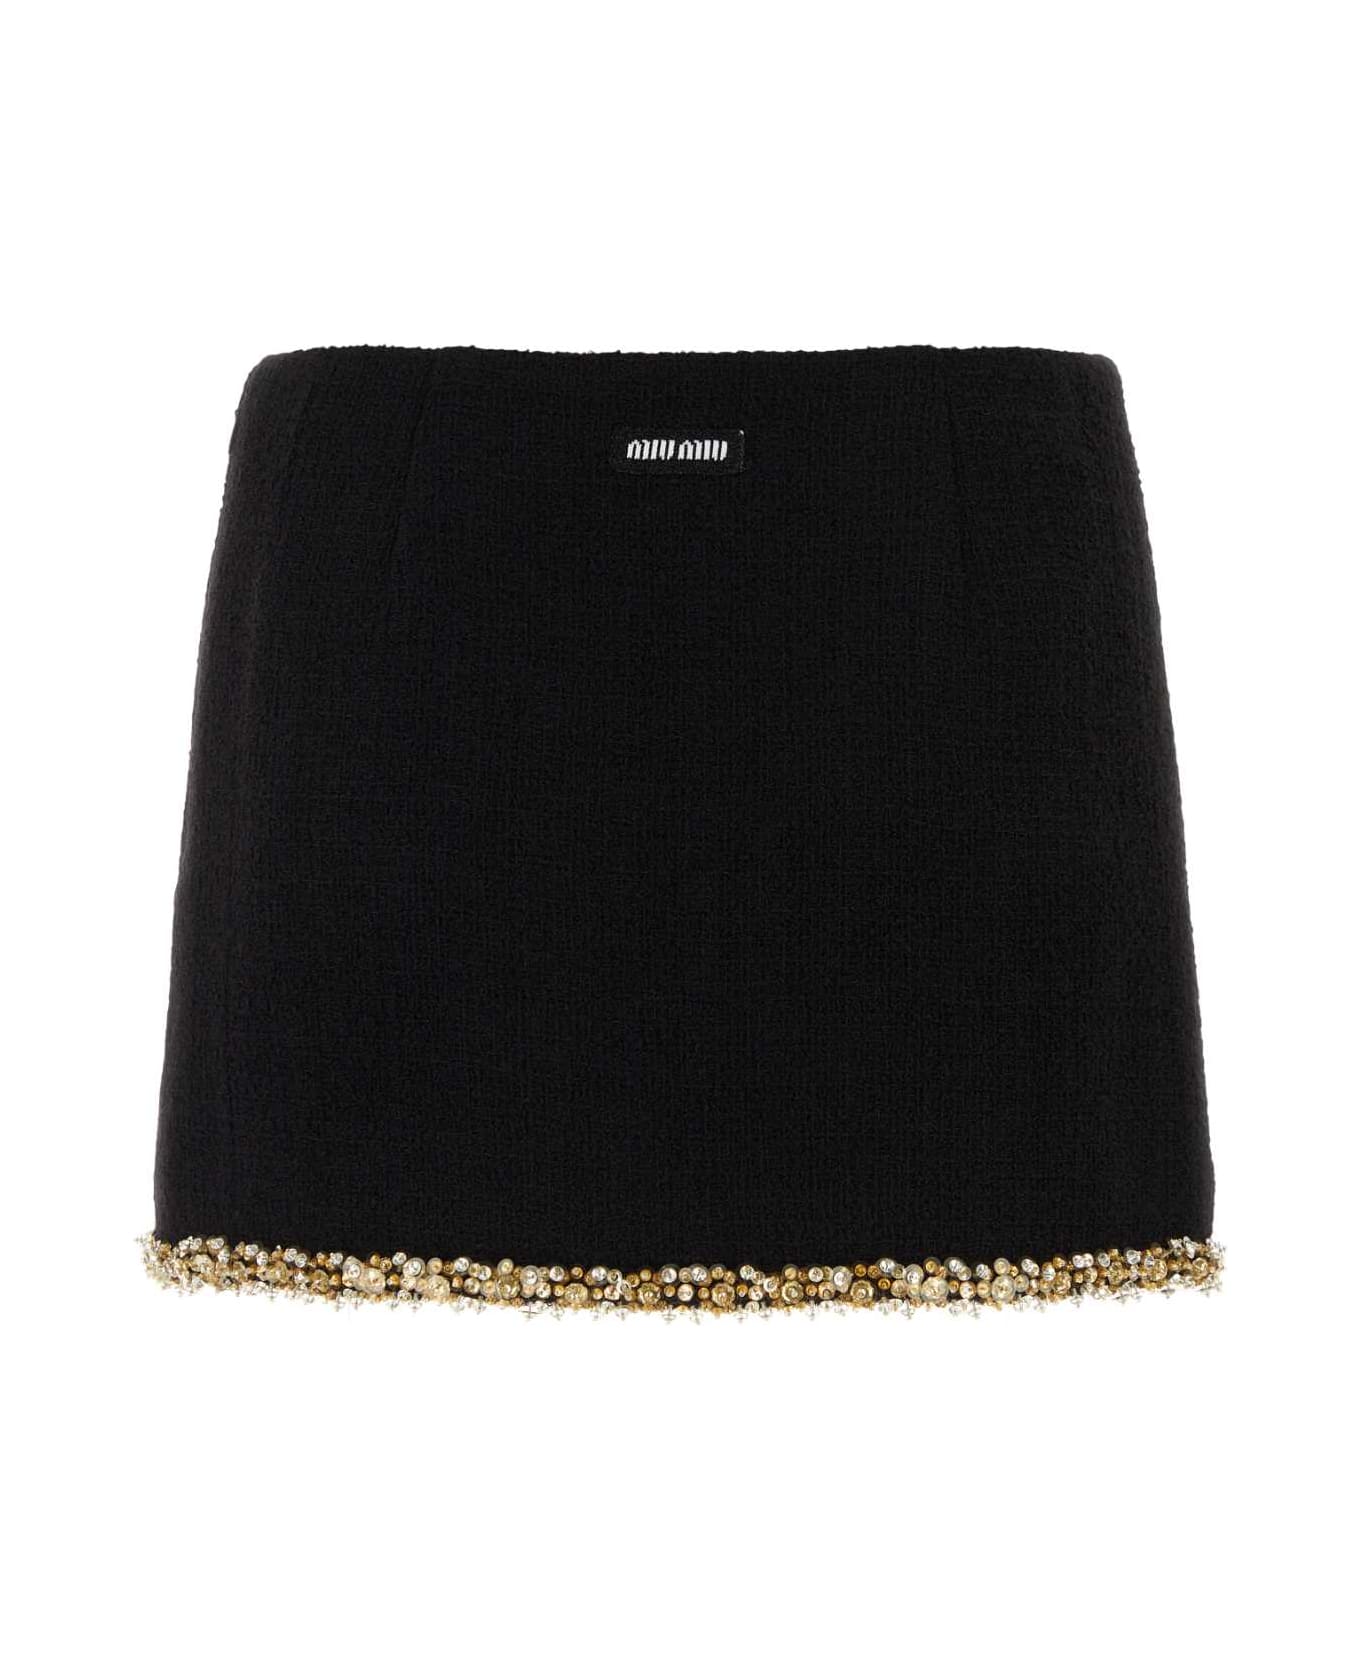 Miu Miu Black Tweed Mini Skirt - NERO